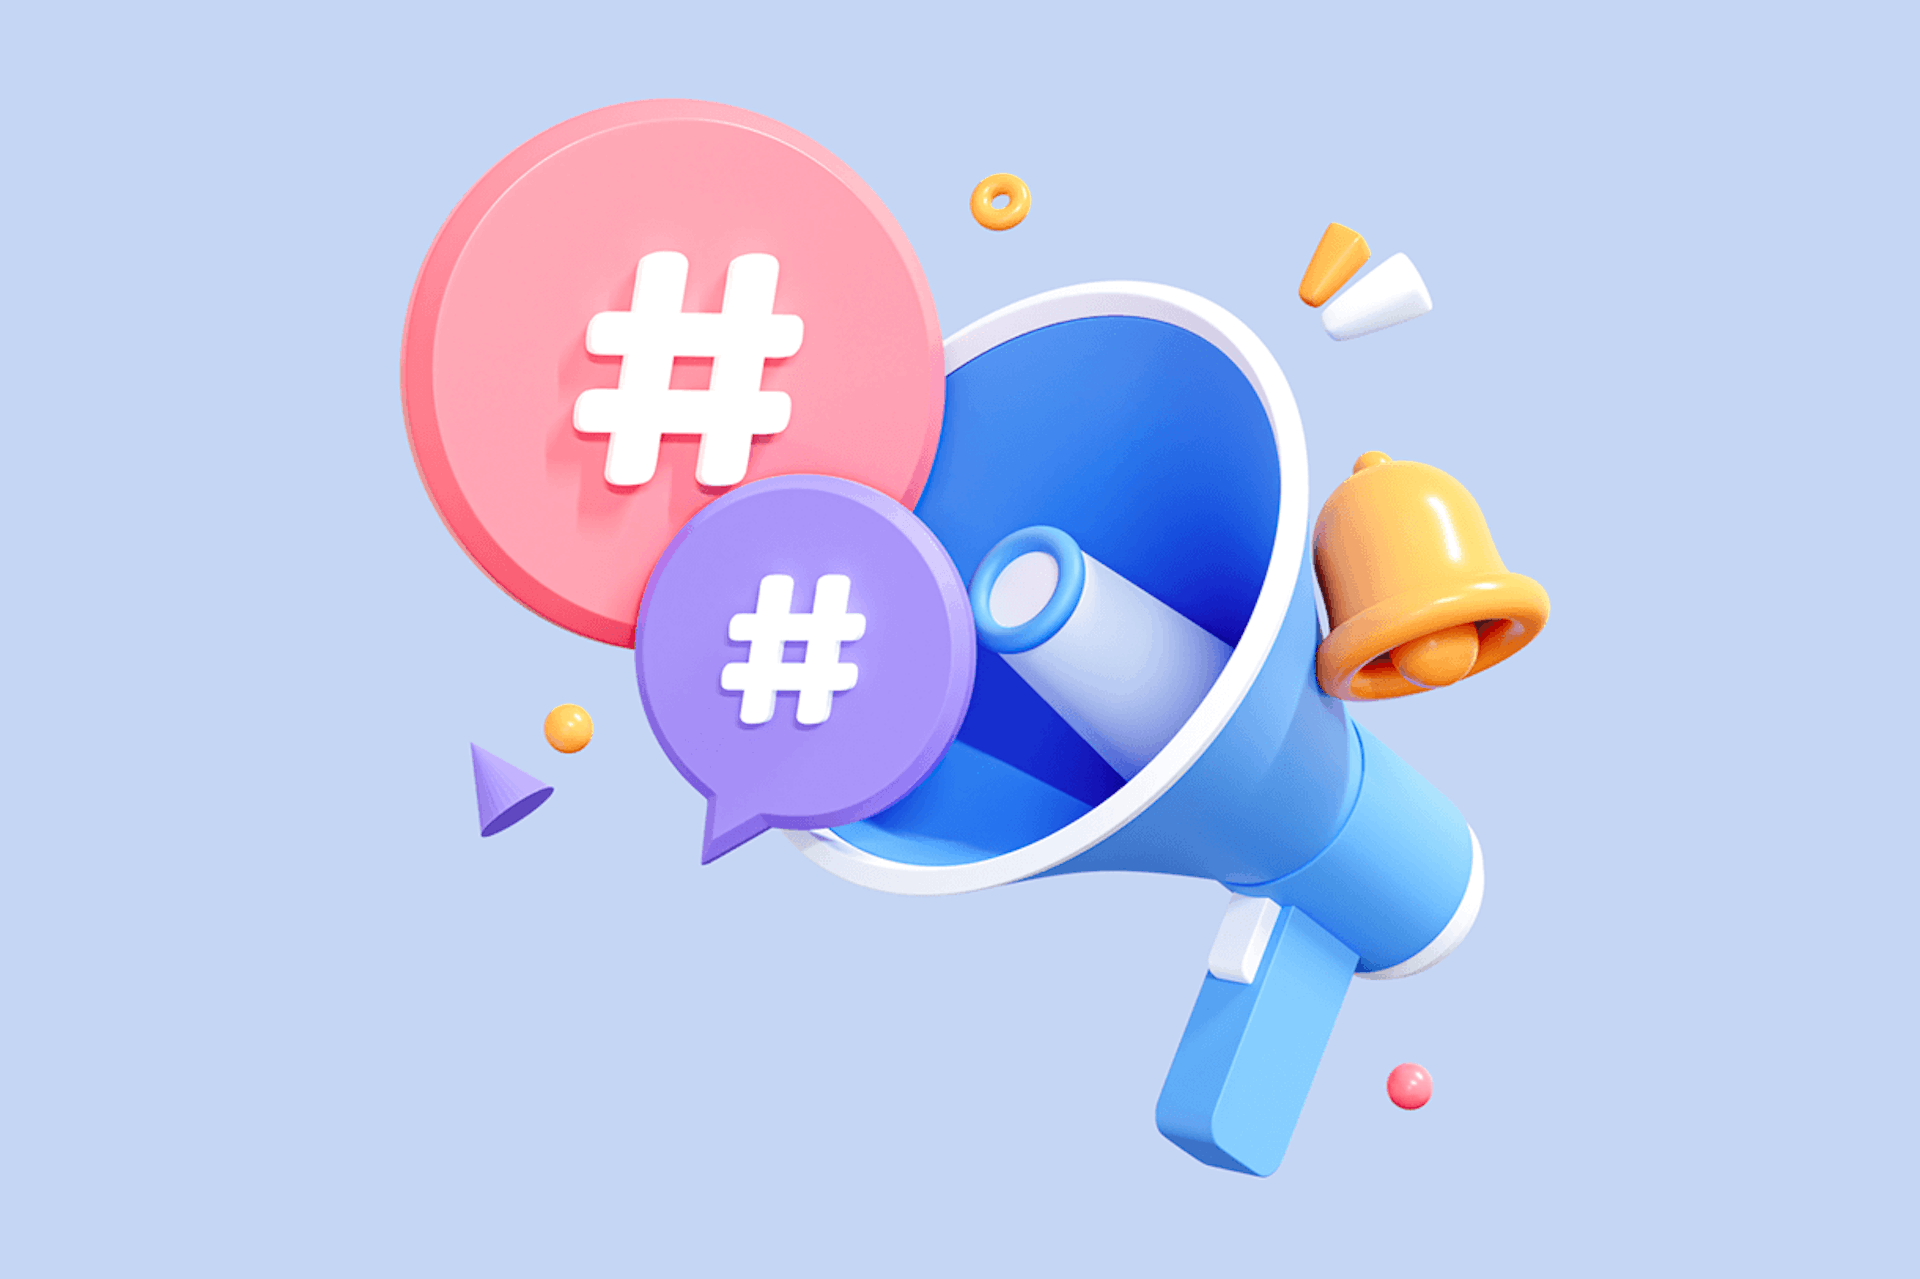 un mégaphone bleu duquel sortent des bulles de dialogues affichant des hashtags.